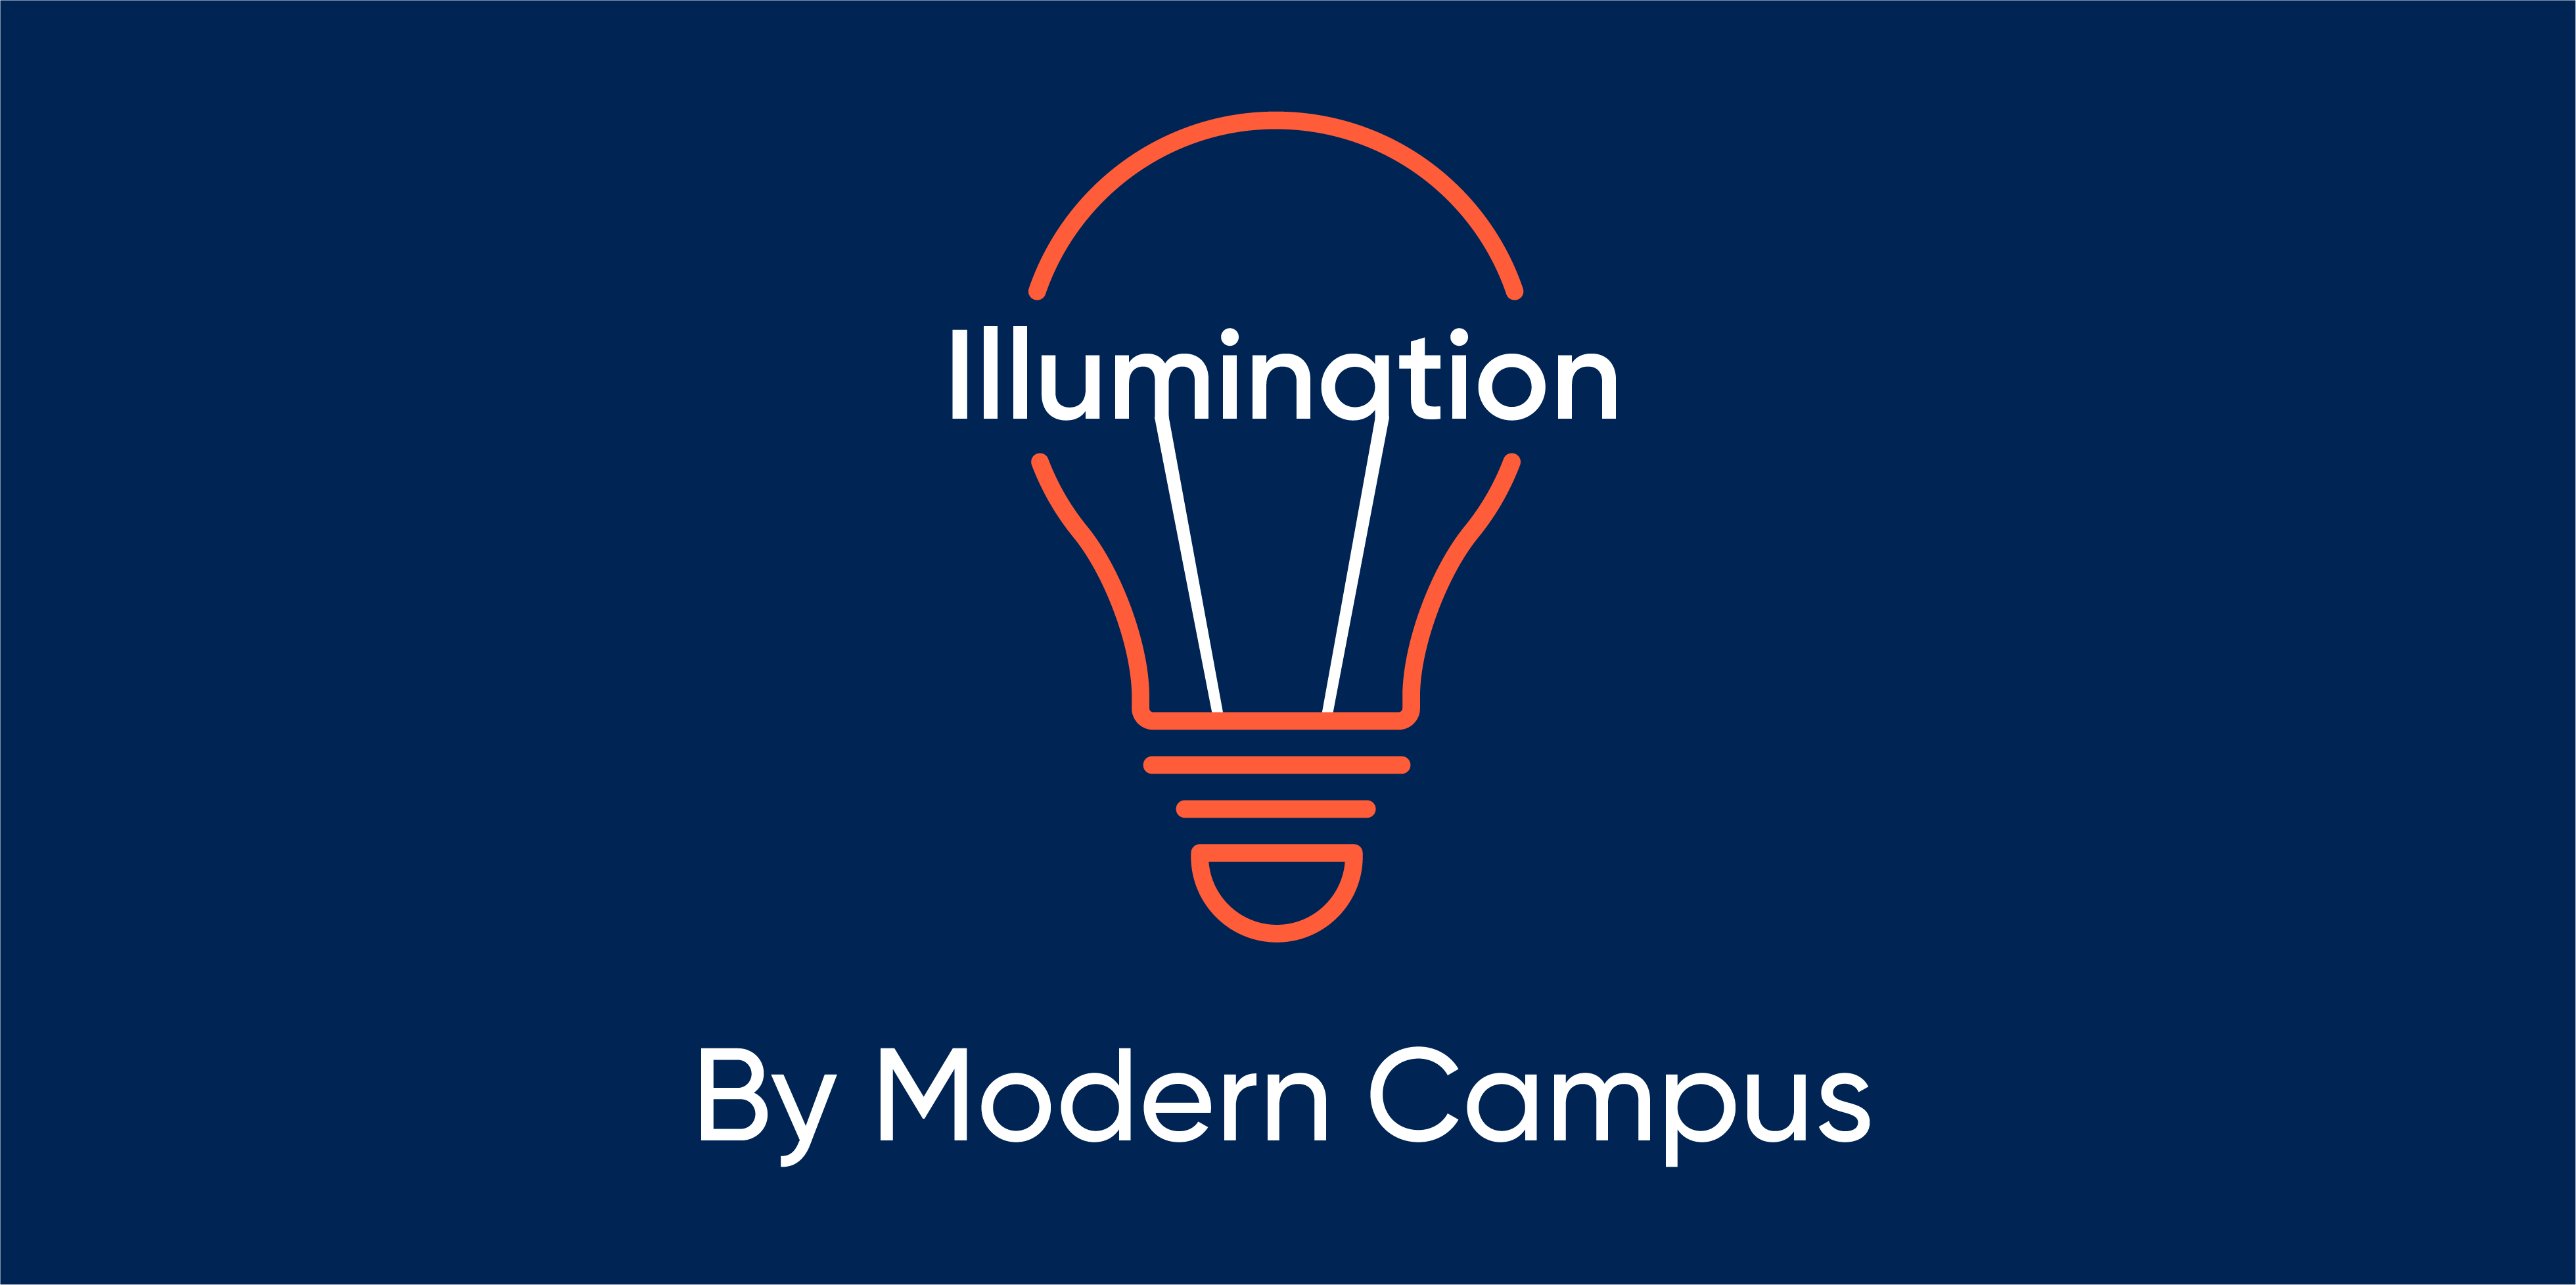 Episode 147: Illumination by Modern Campus